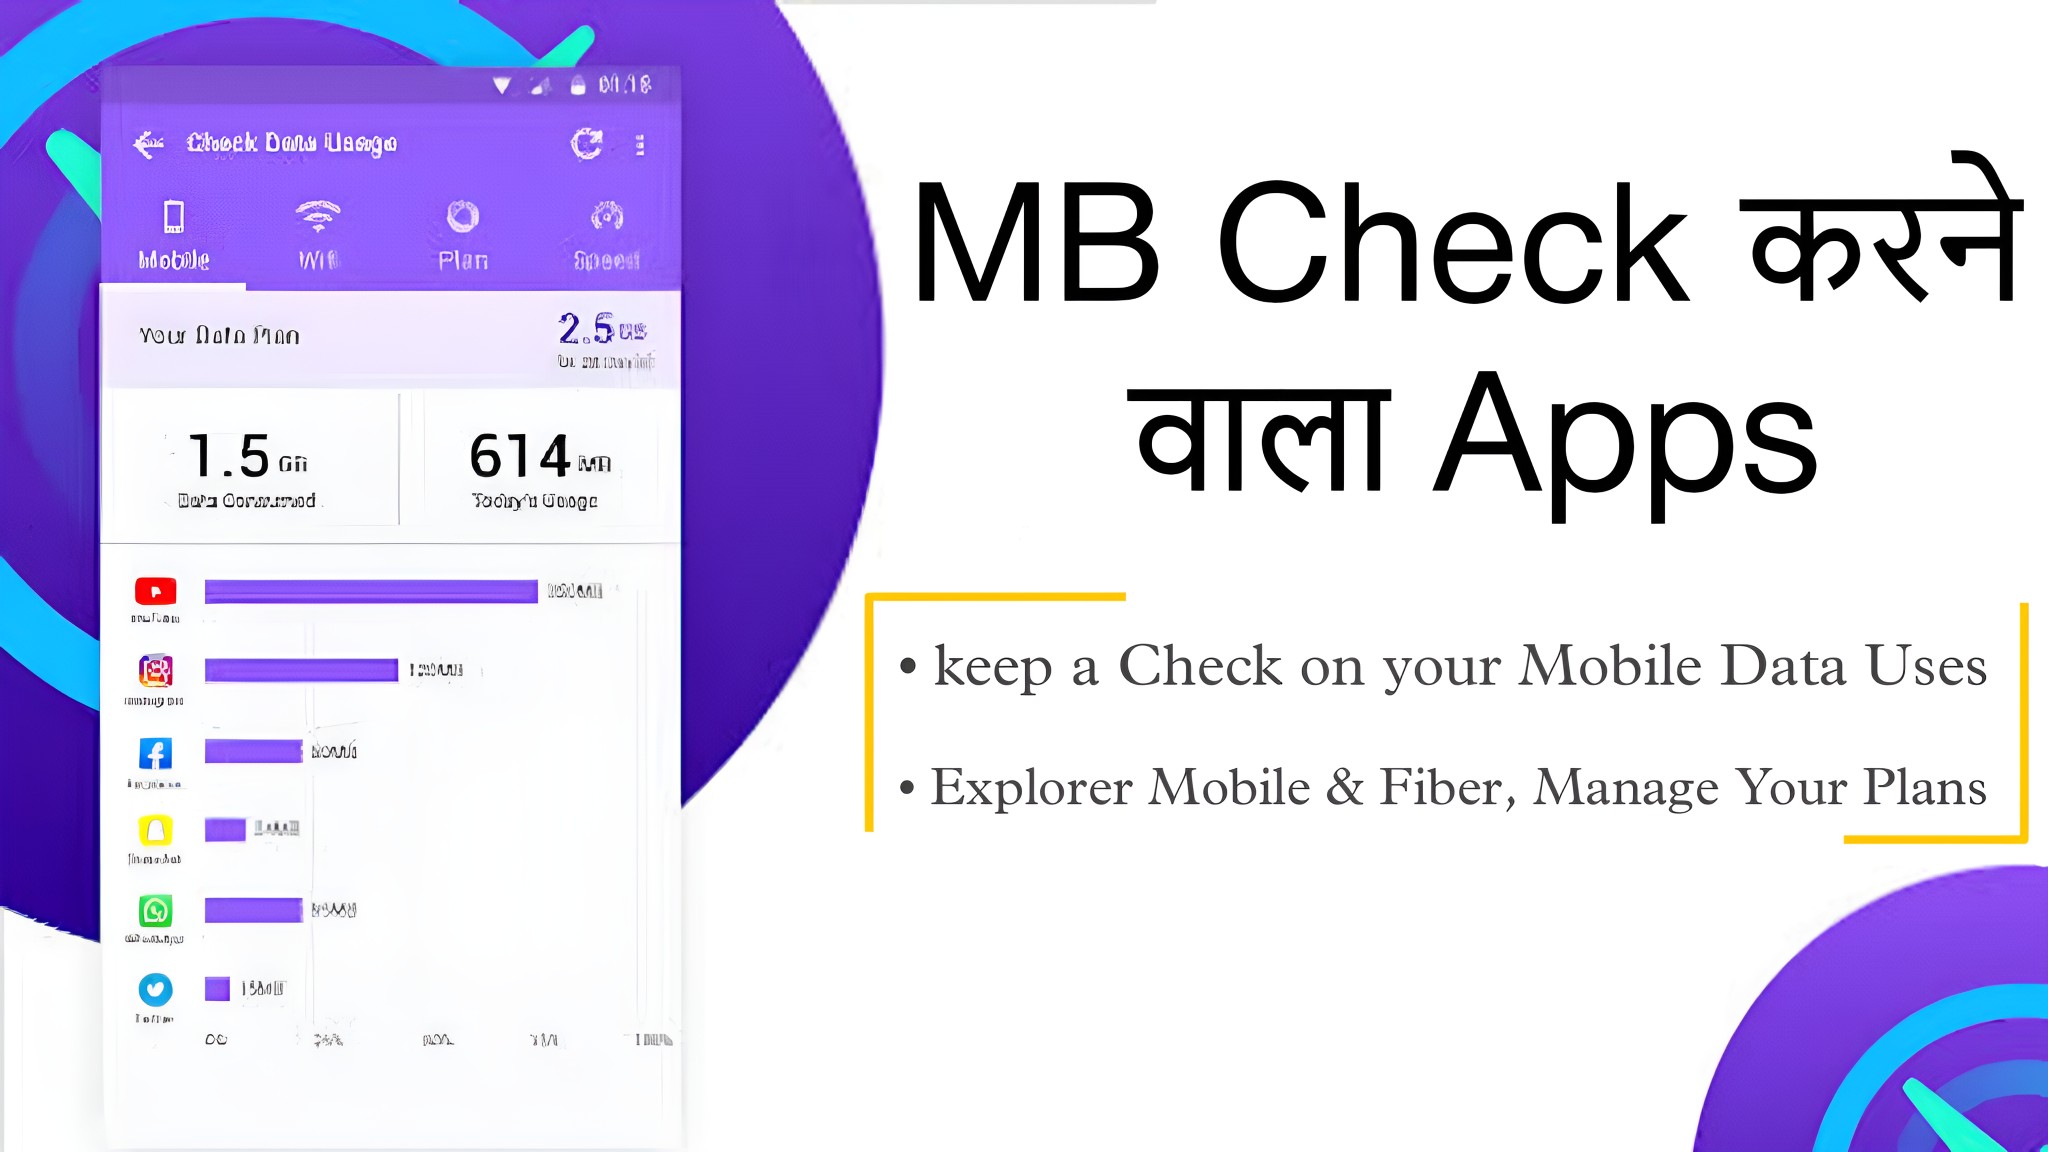 MB Check Karne Wala Apps